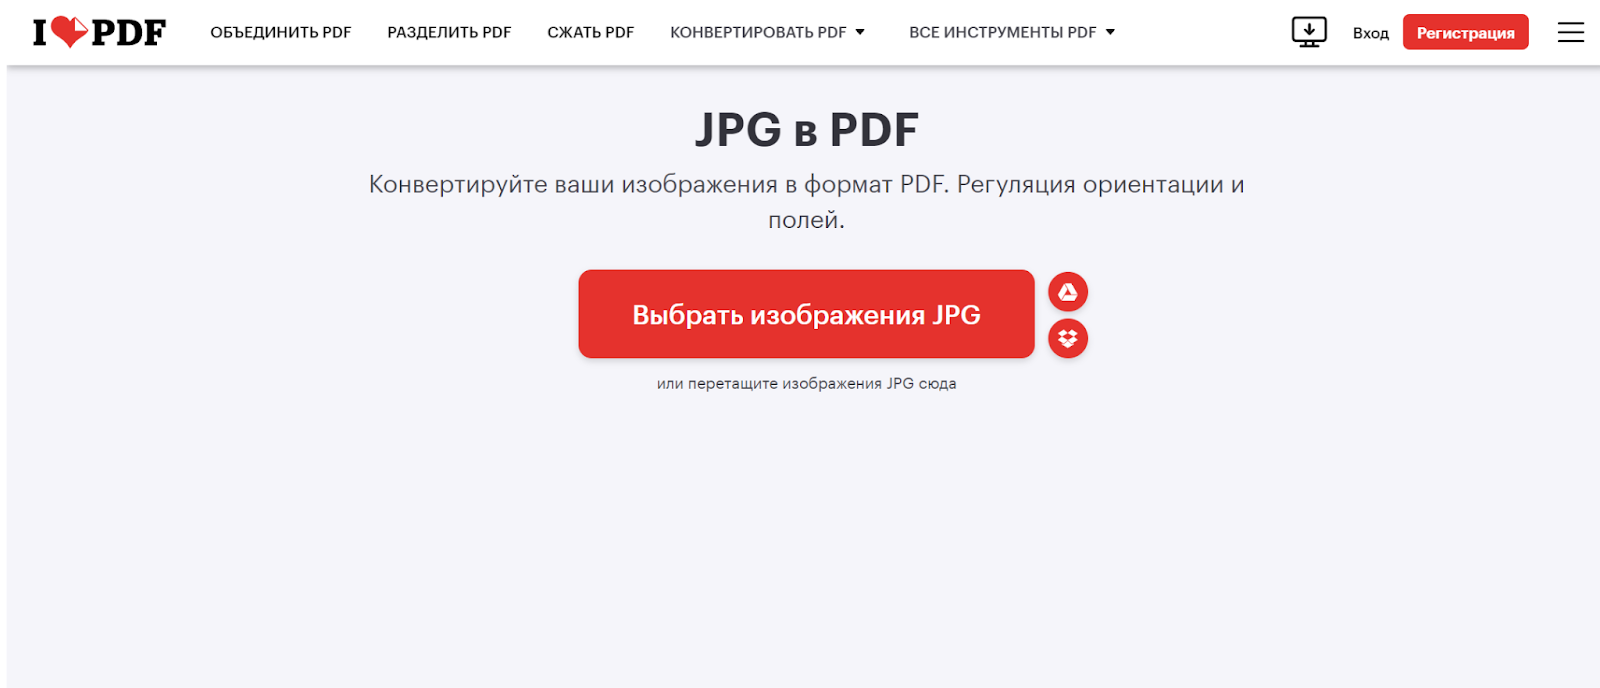 Как преобразовать JPG в PDF: 3 простых способа